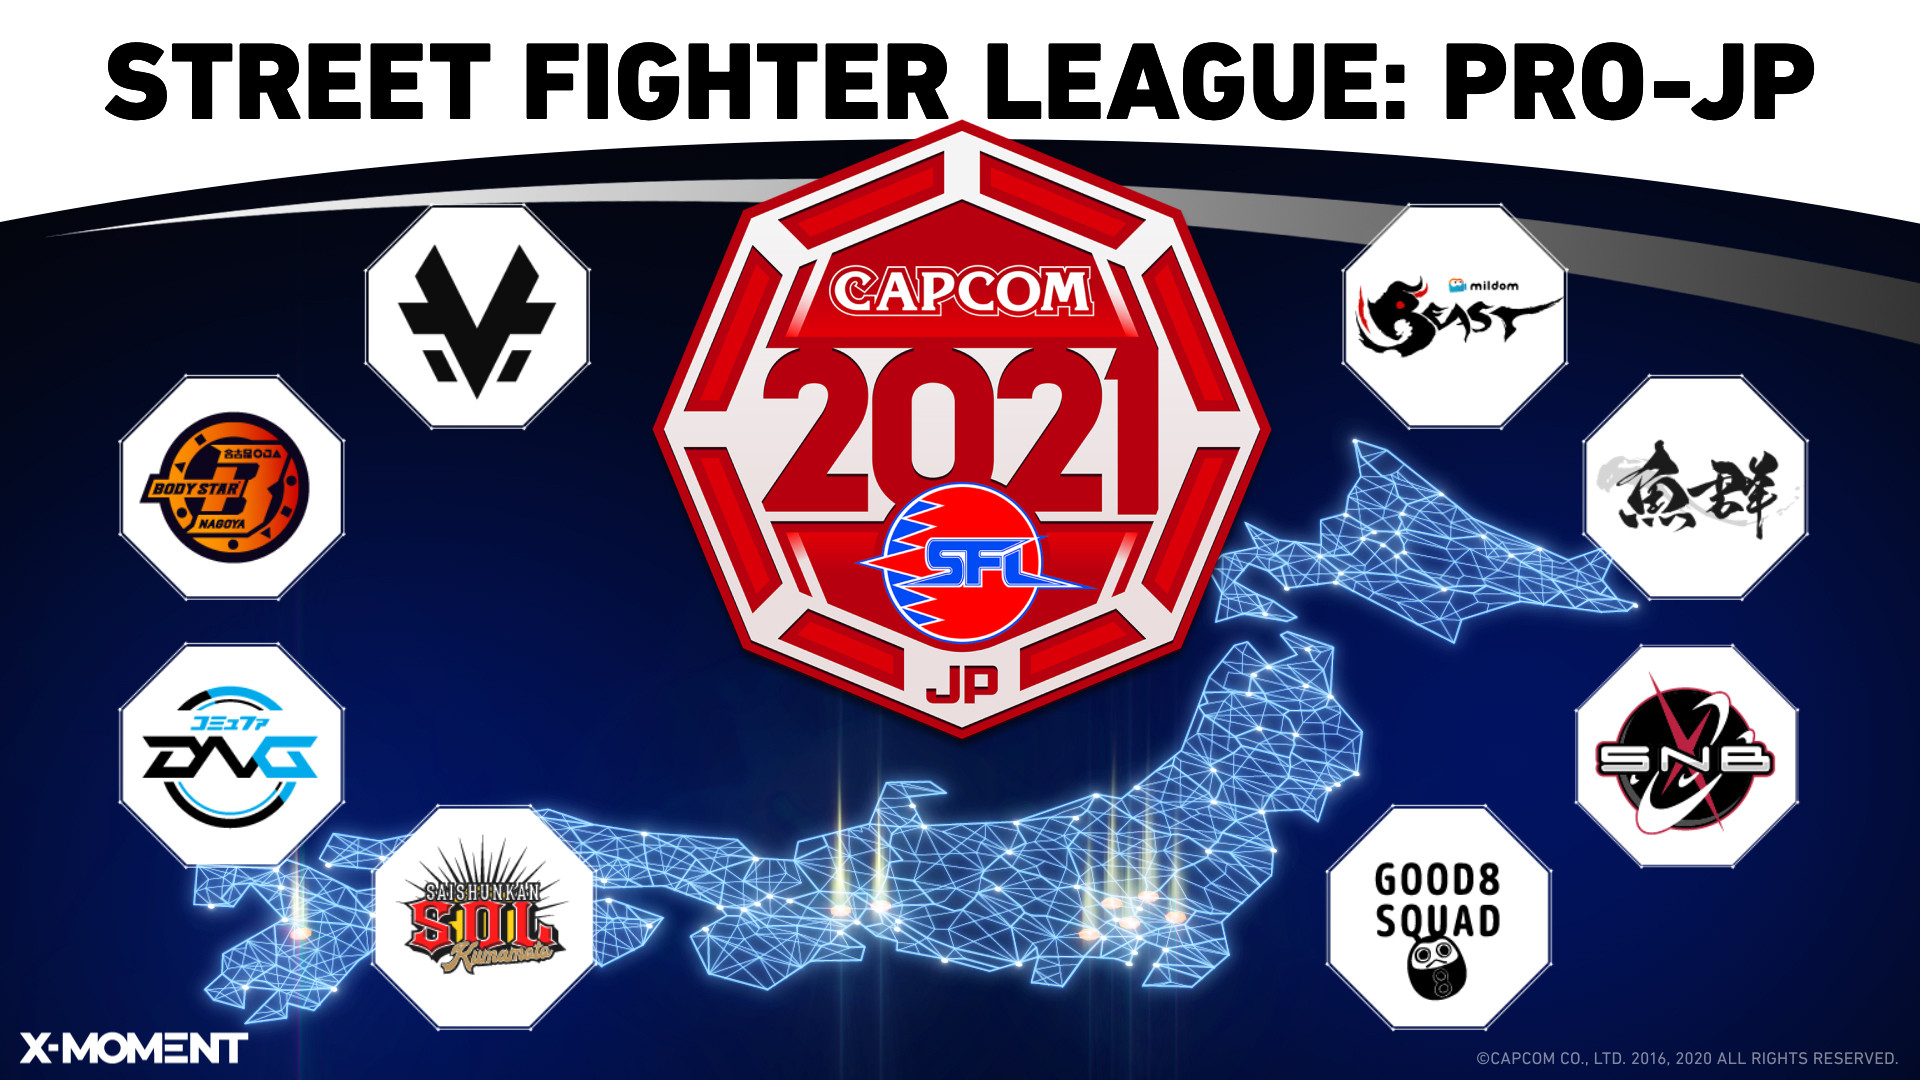 【大会情報】ストリートファイターリーグ: Pro-JP 2021 第13節【2021年12月2日、6日】